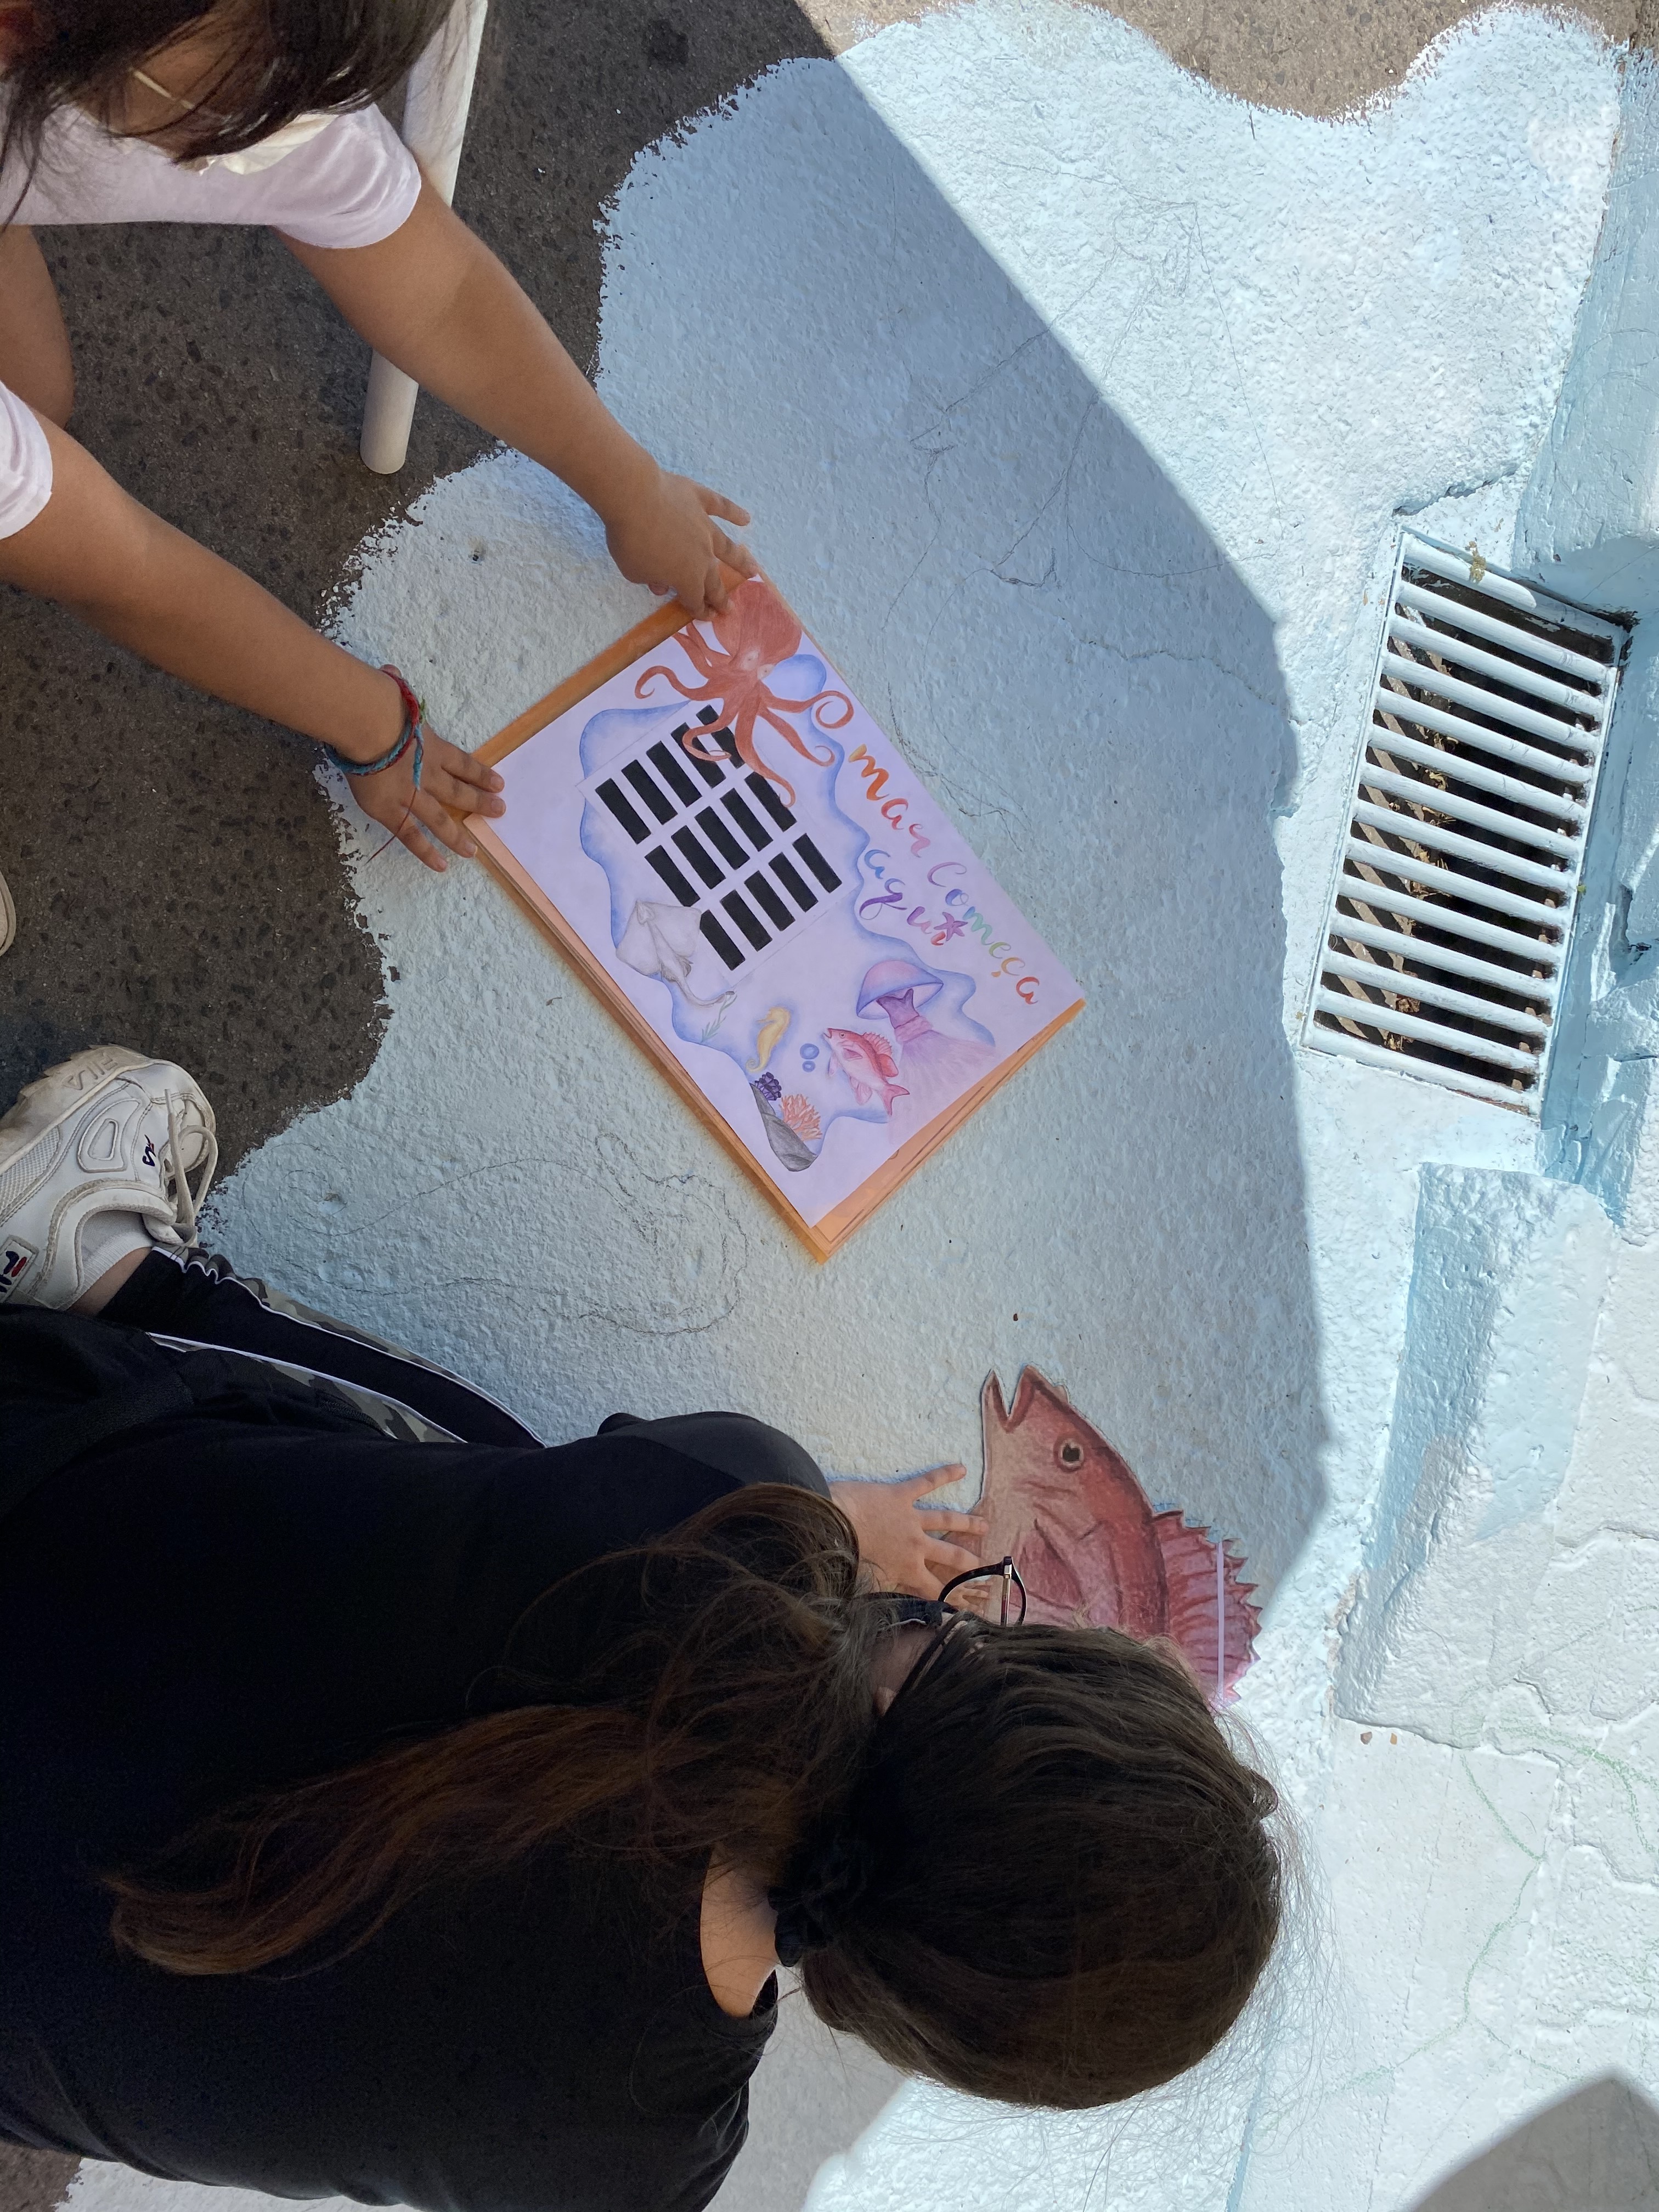 Os  alunos começaram por marcar a azul e branco a zona do mar, depois começaram a marcar os desenhos com os moldes que fizeram.